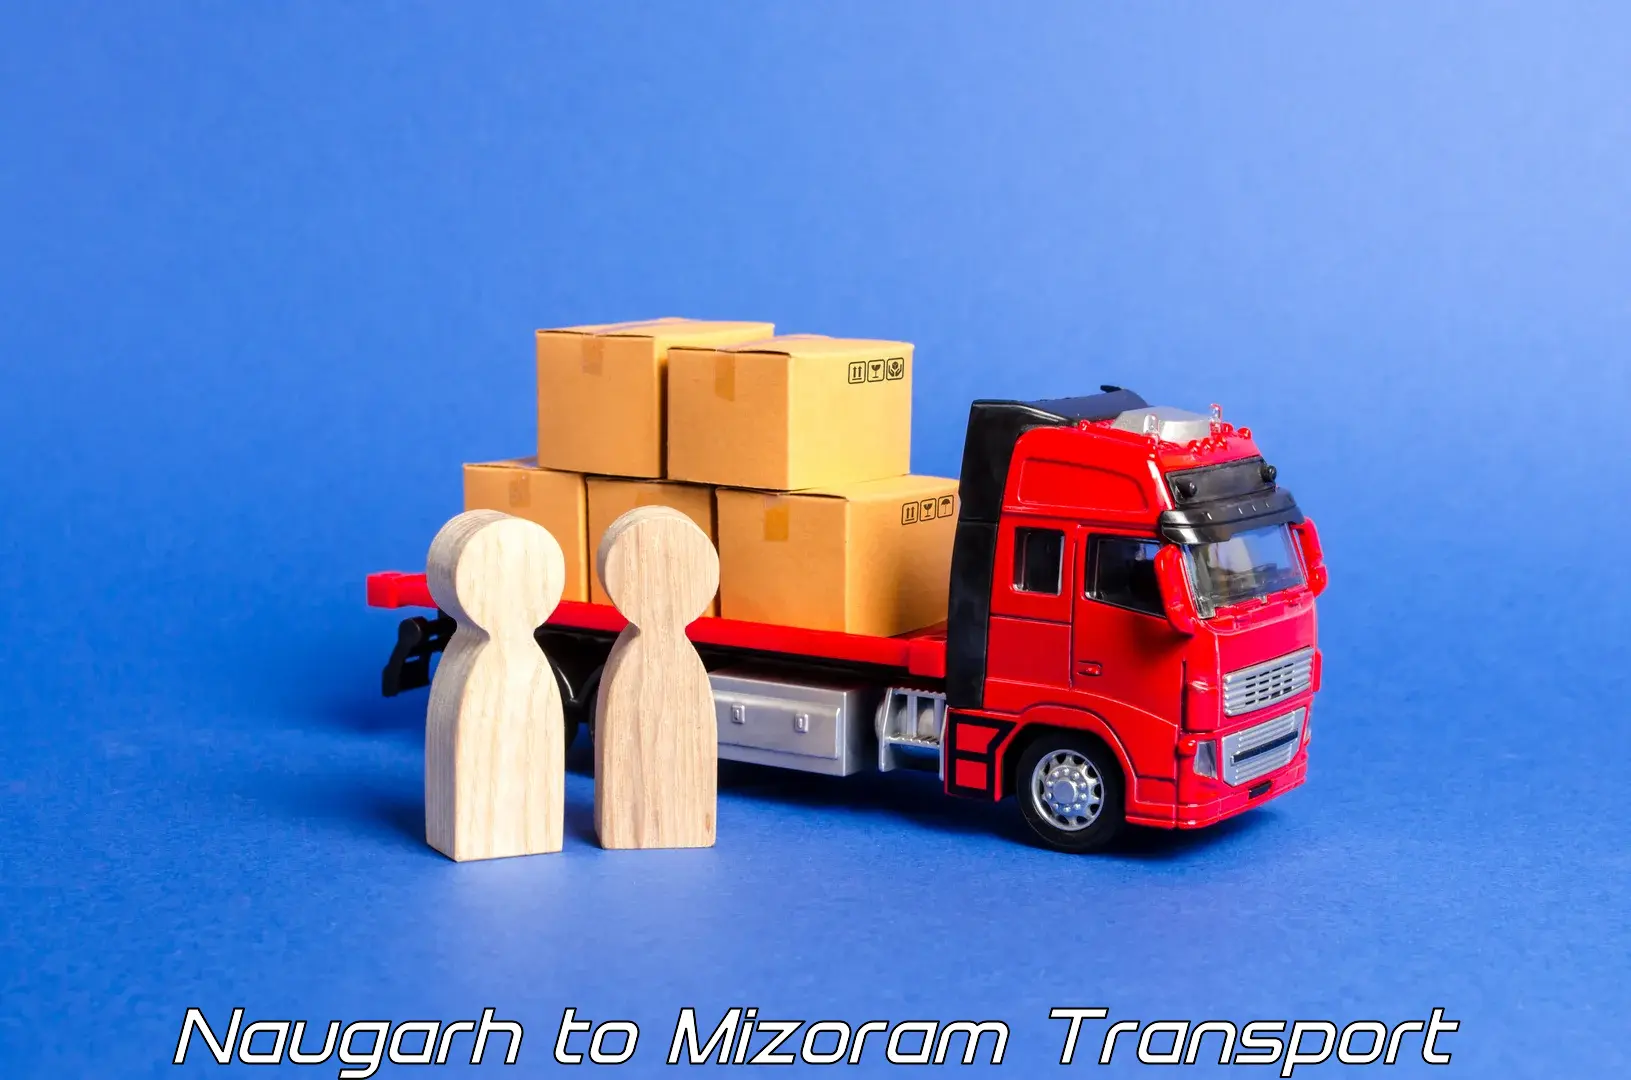 Cargo train transport services Naugarh to Mizoram